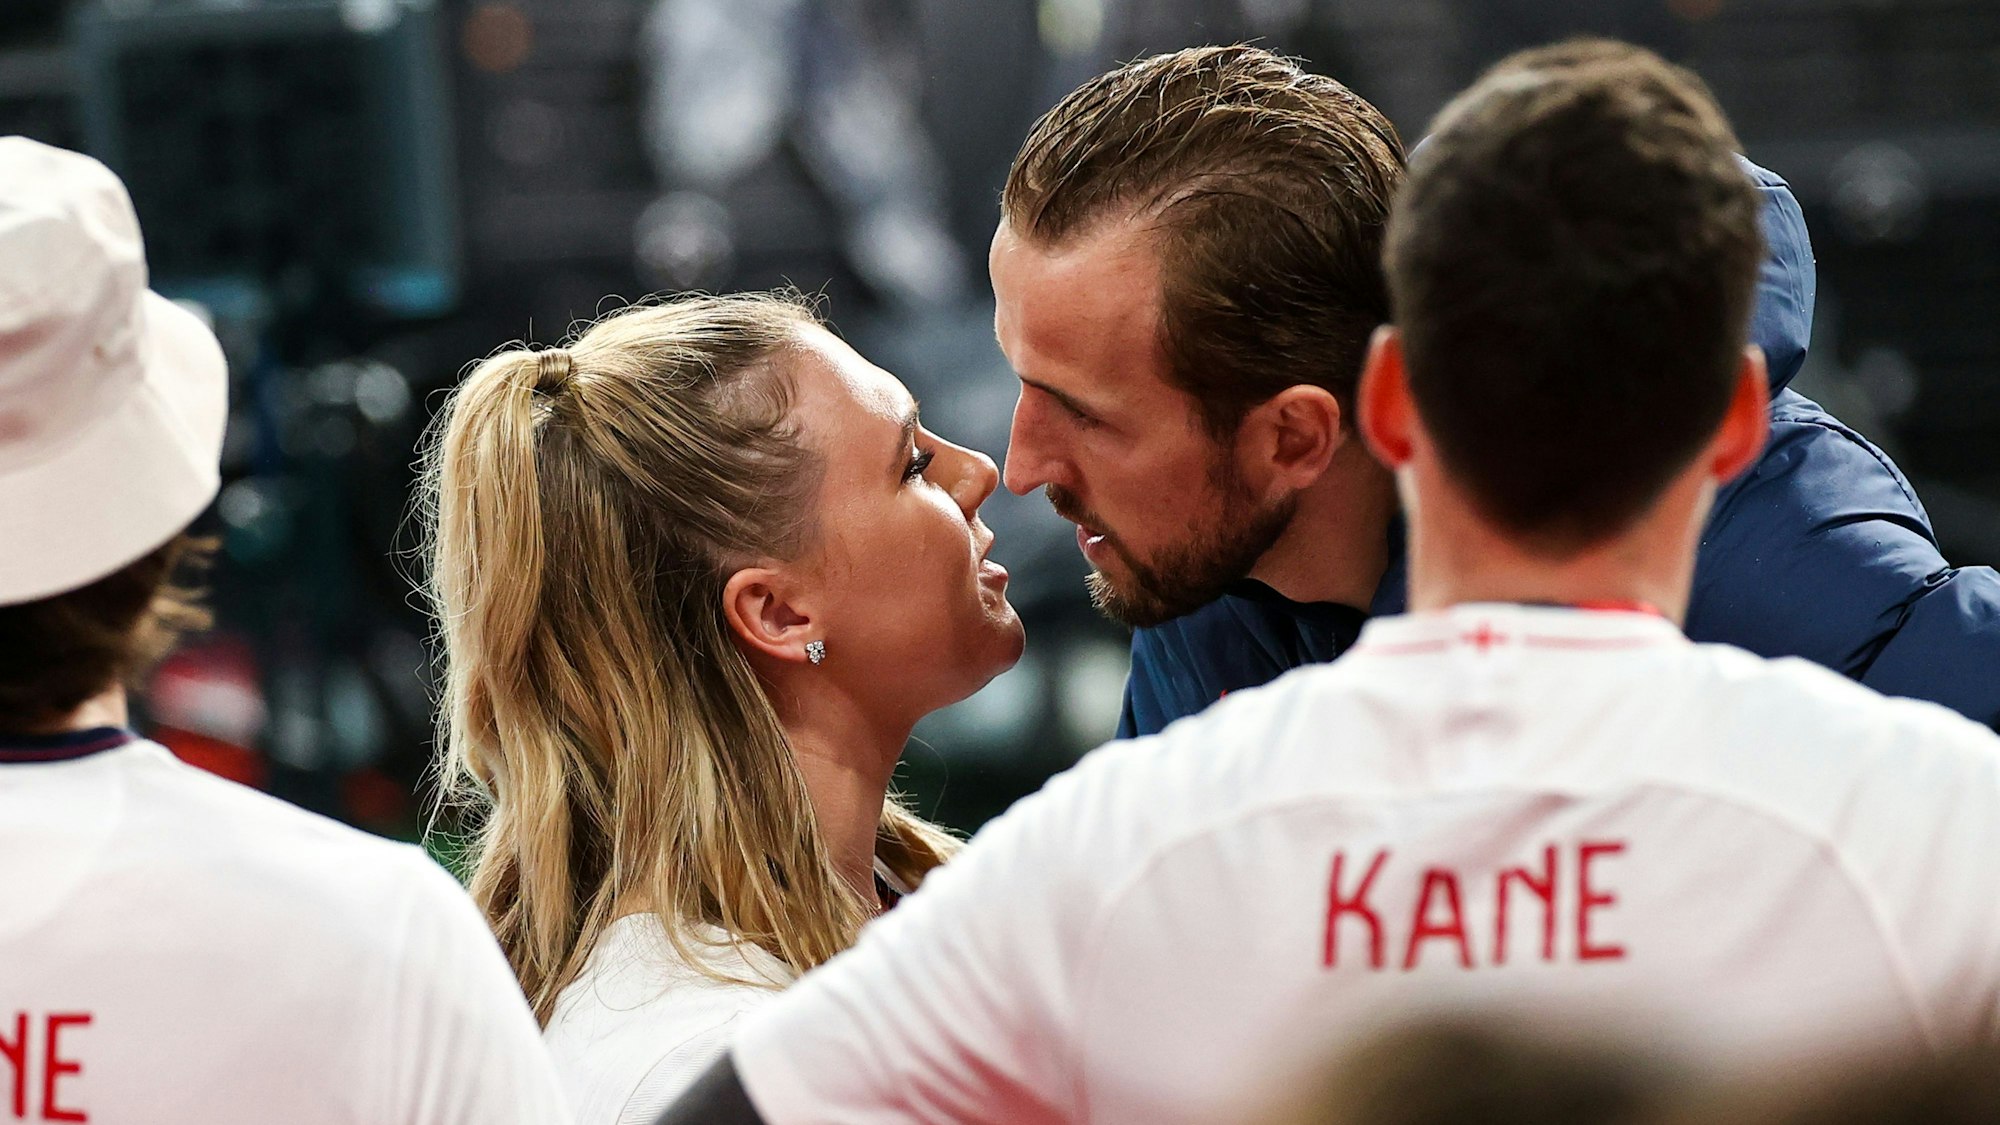 Englands Kapitän Harry Kane küsst nach dem verlorenen EM-Finale gegen Italien seine Frau Katie Goodland.